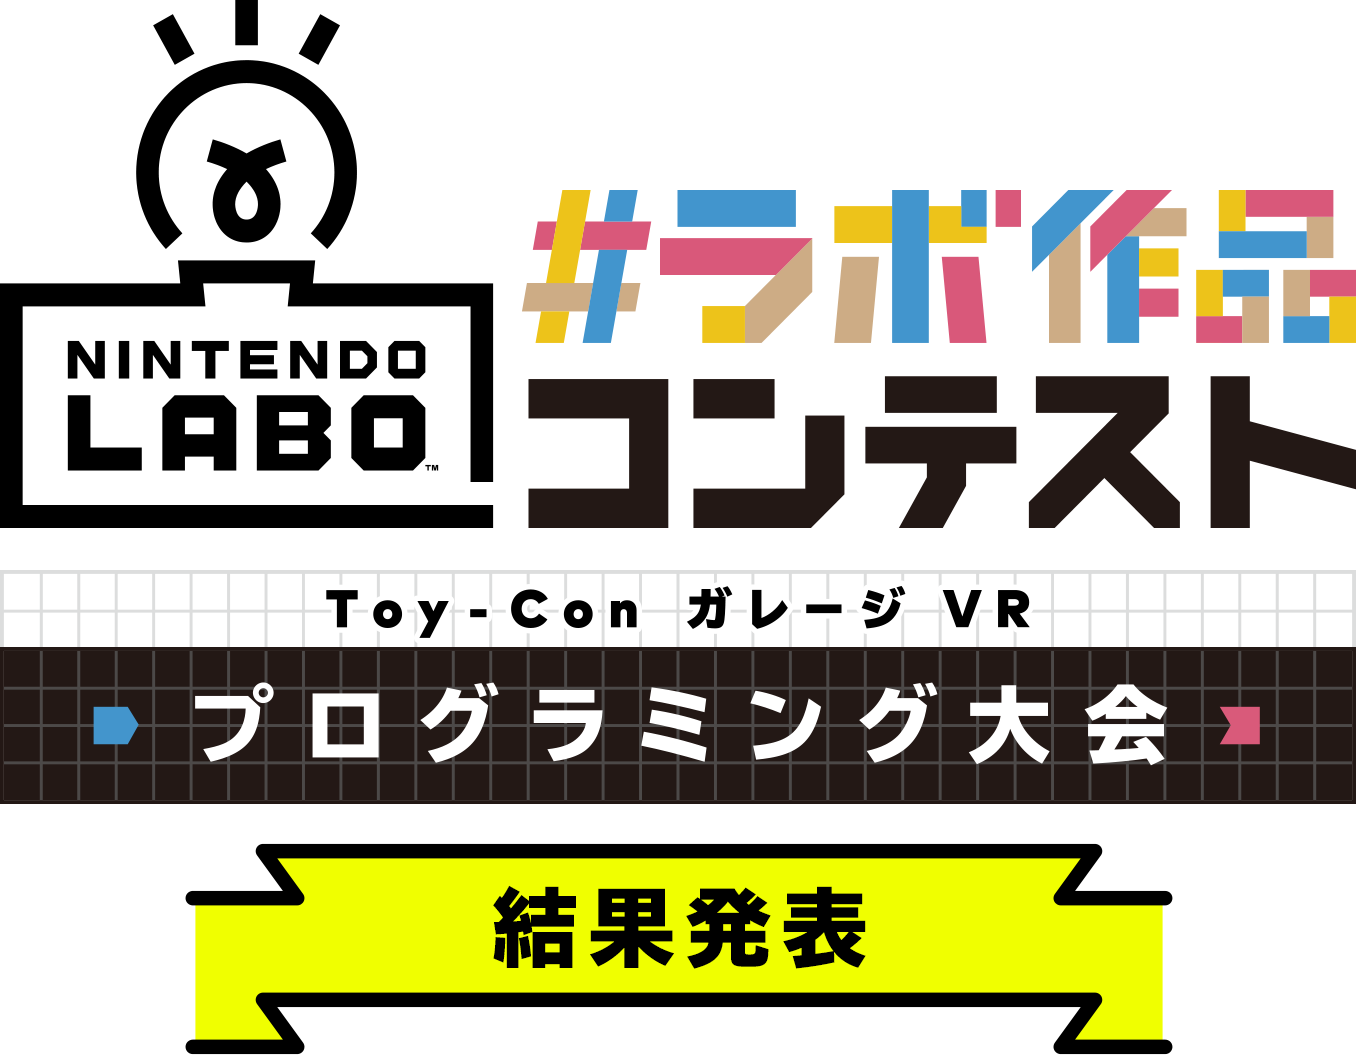 ラボ作品コンテスト Toy-ConガレージVR プログラミング大会 結果発表